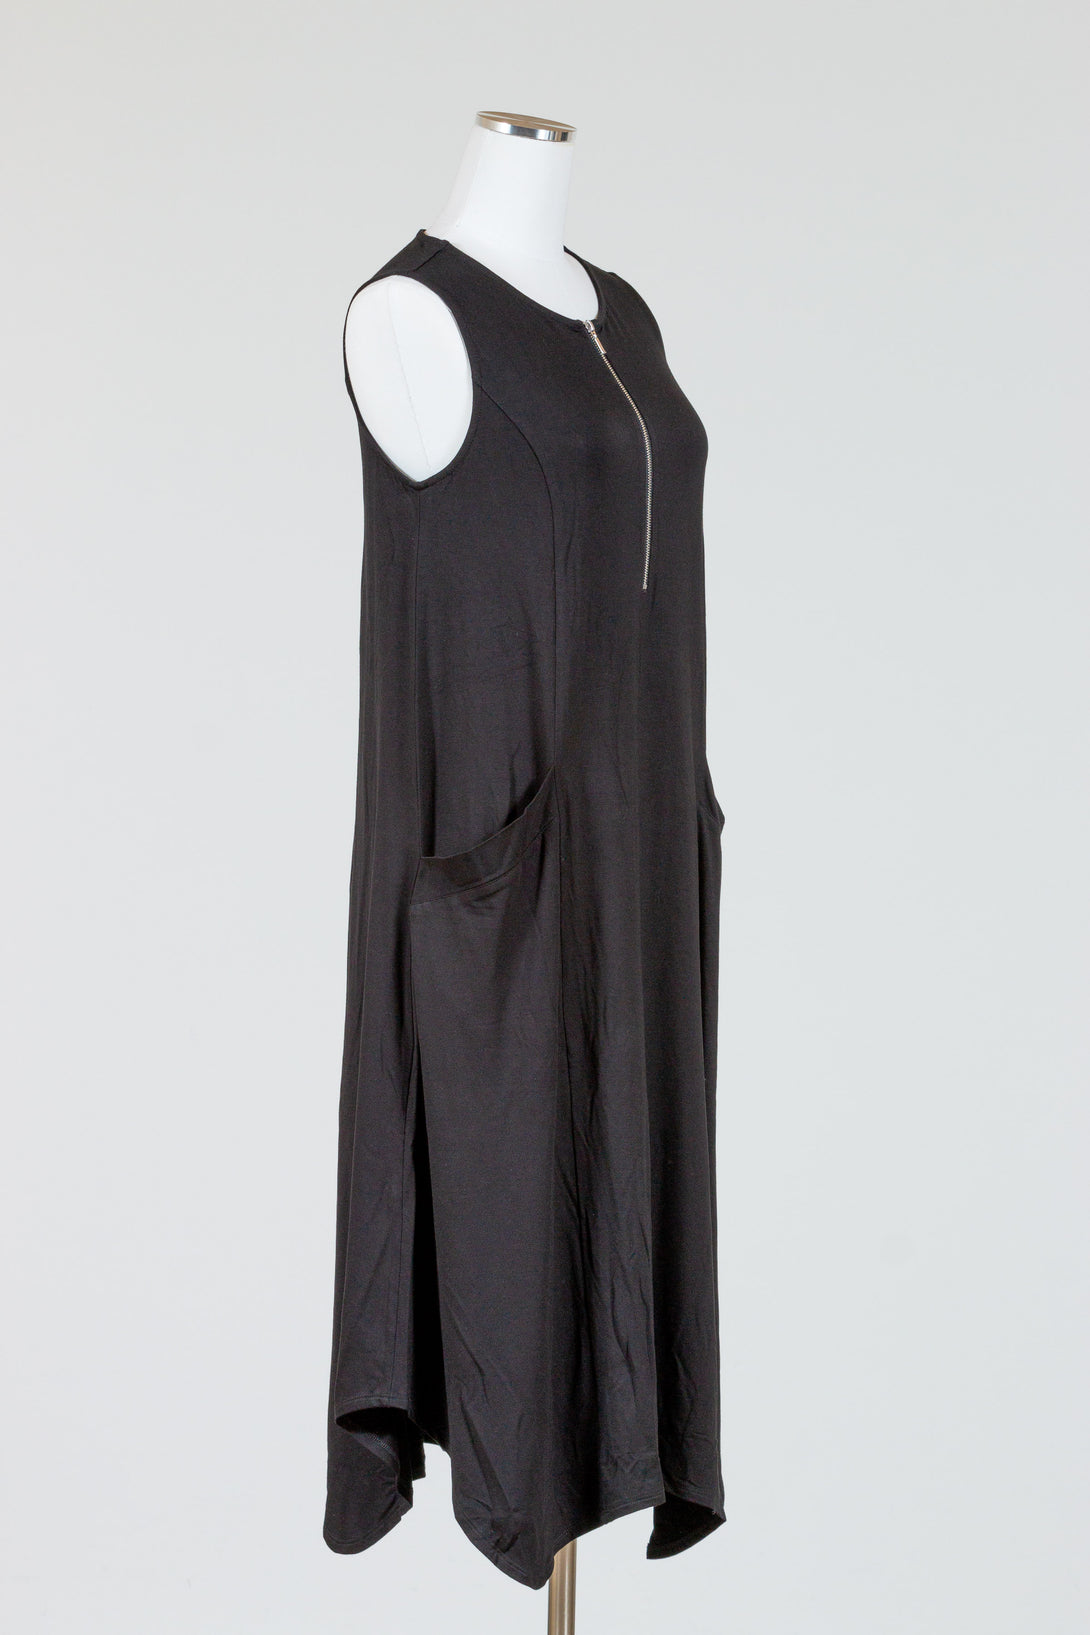 LIV-Habitat-Arthouse-Knit-ZipIt-Dress-Black